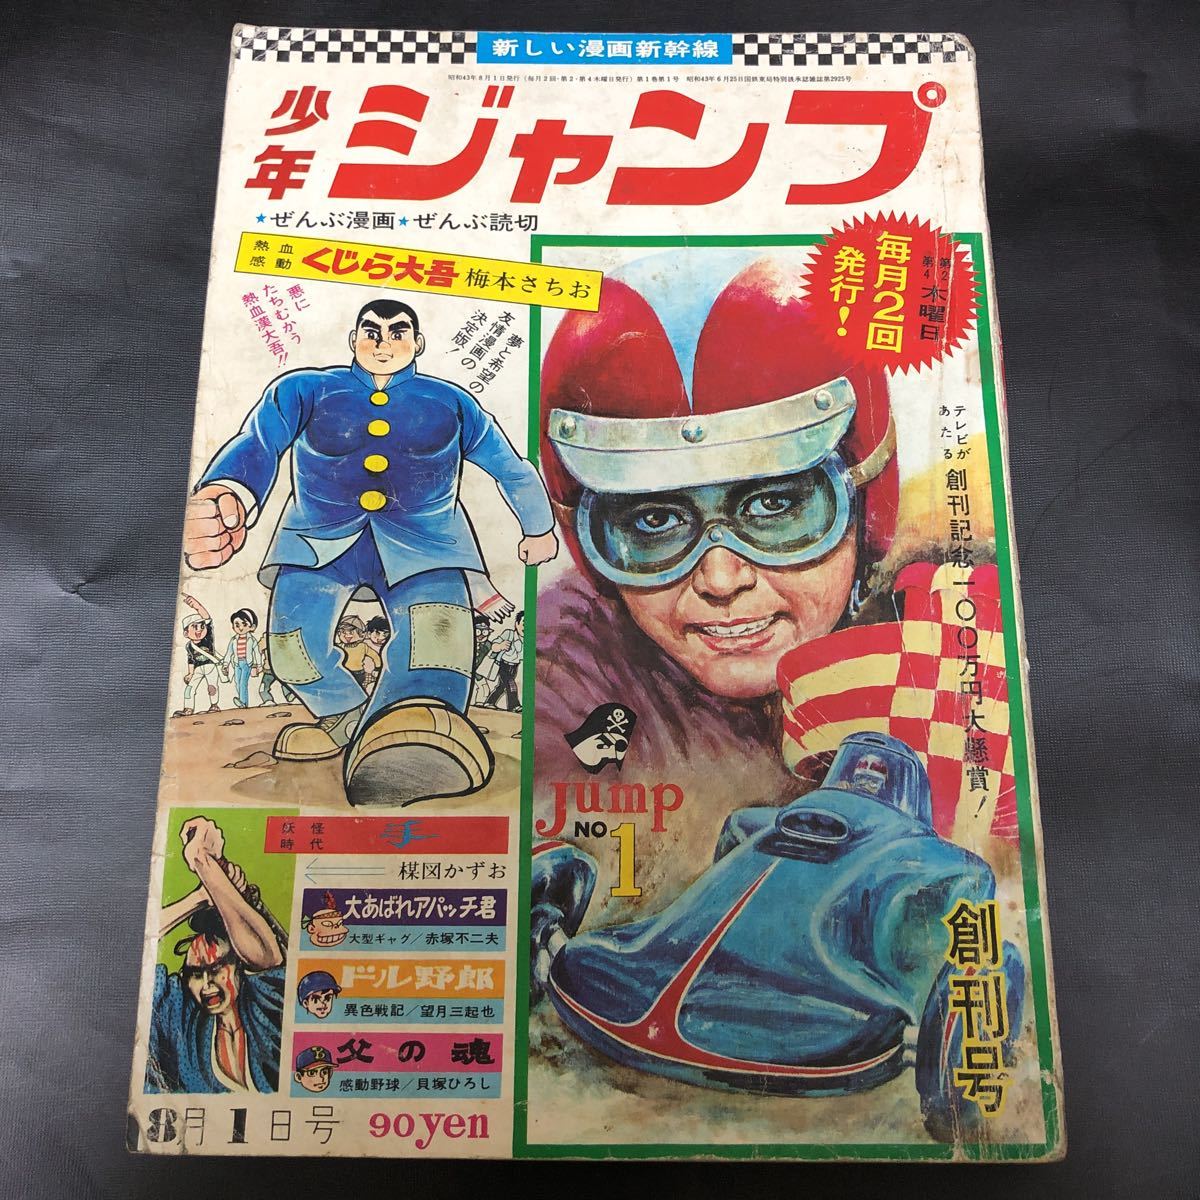 【オリジナル 創刊号】週刊少年ジャンプ 創刊号 当時モノ 昭和43年 1968年 vintage 貴重 極レア_画像1